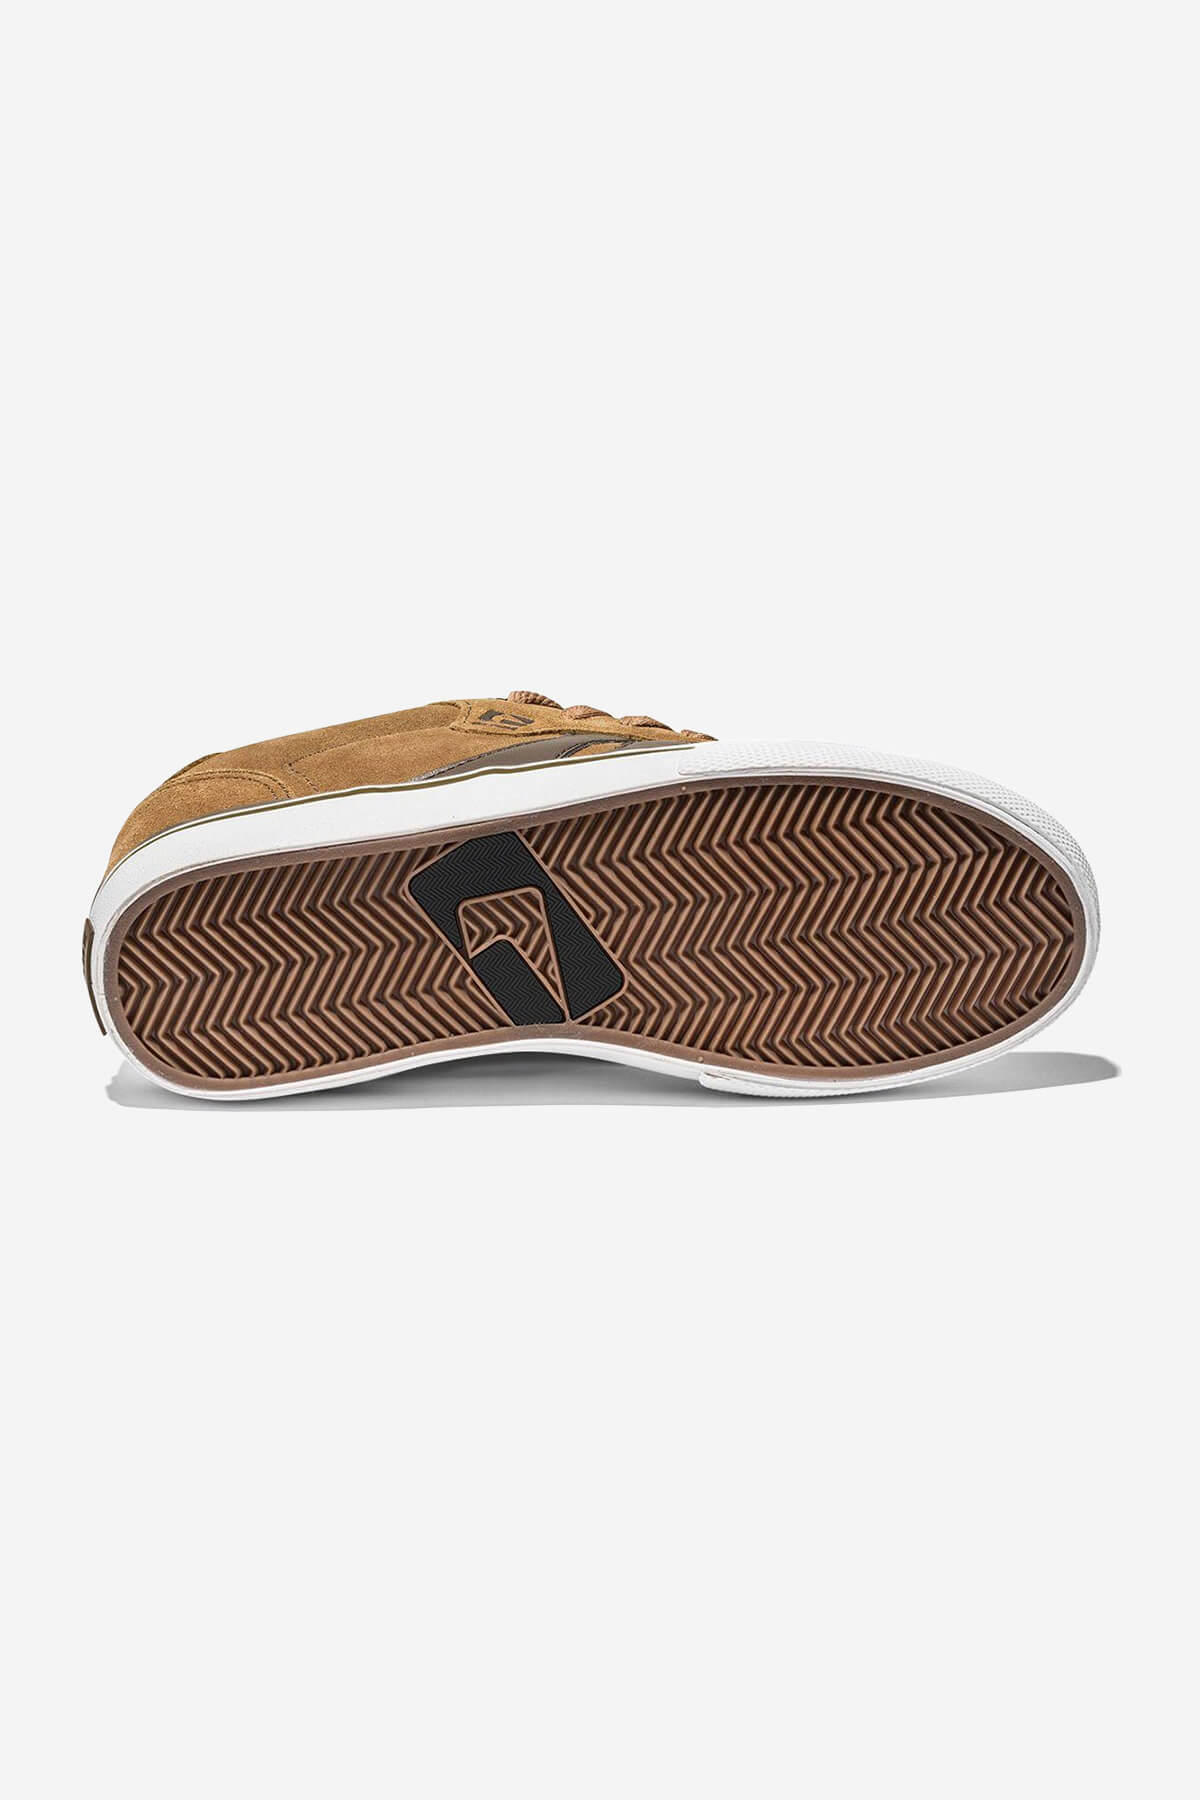 Encore-2 Tan/Brown skateboard  schoenen